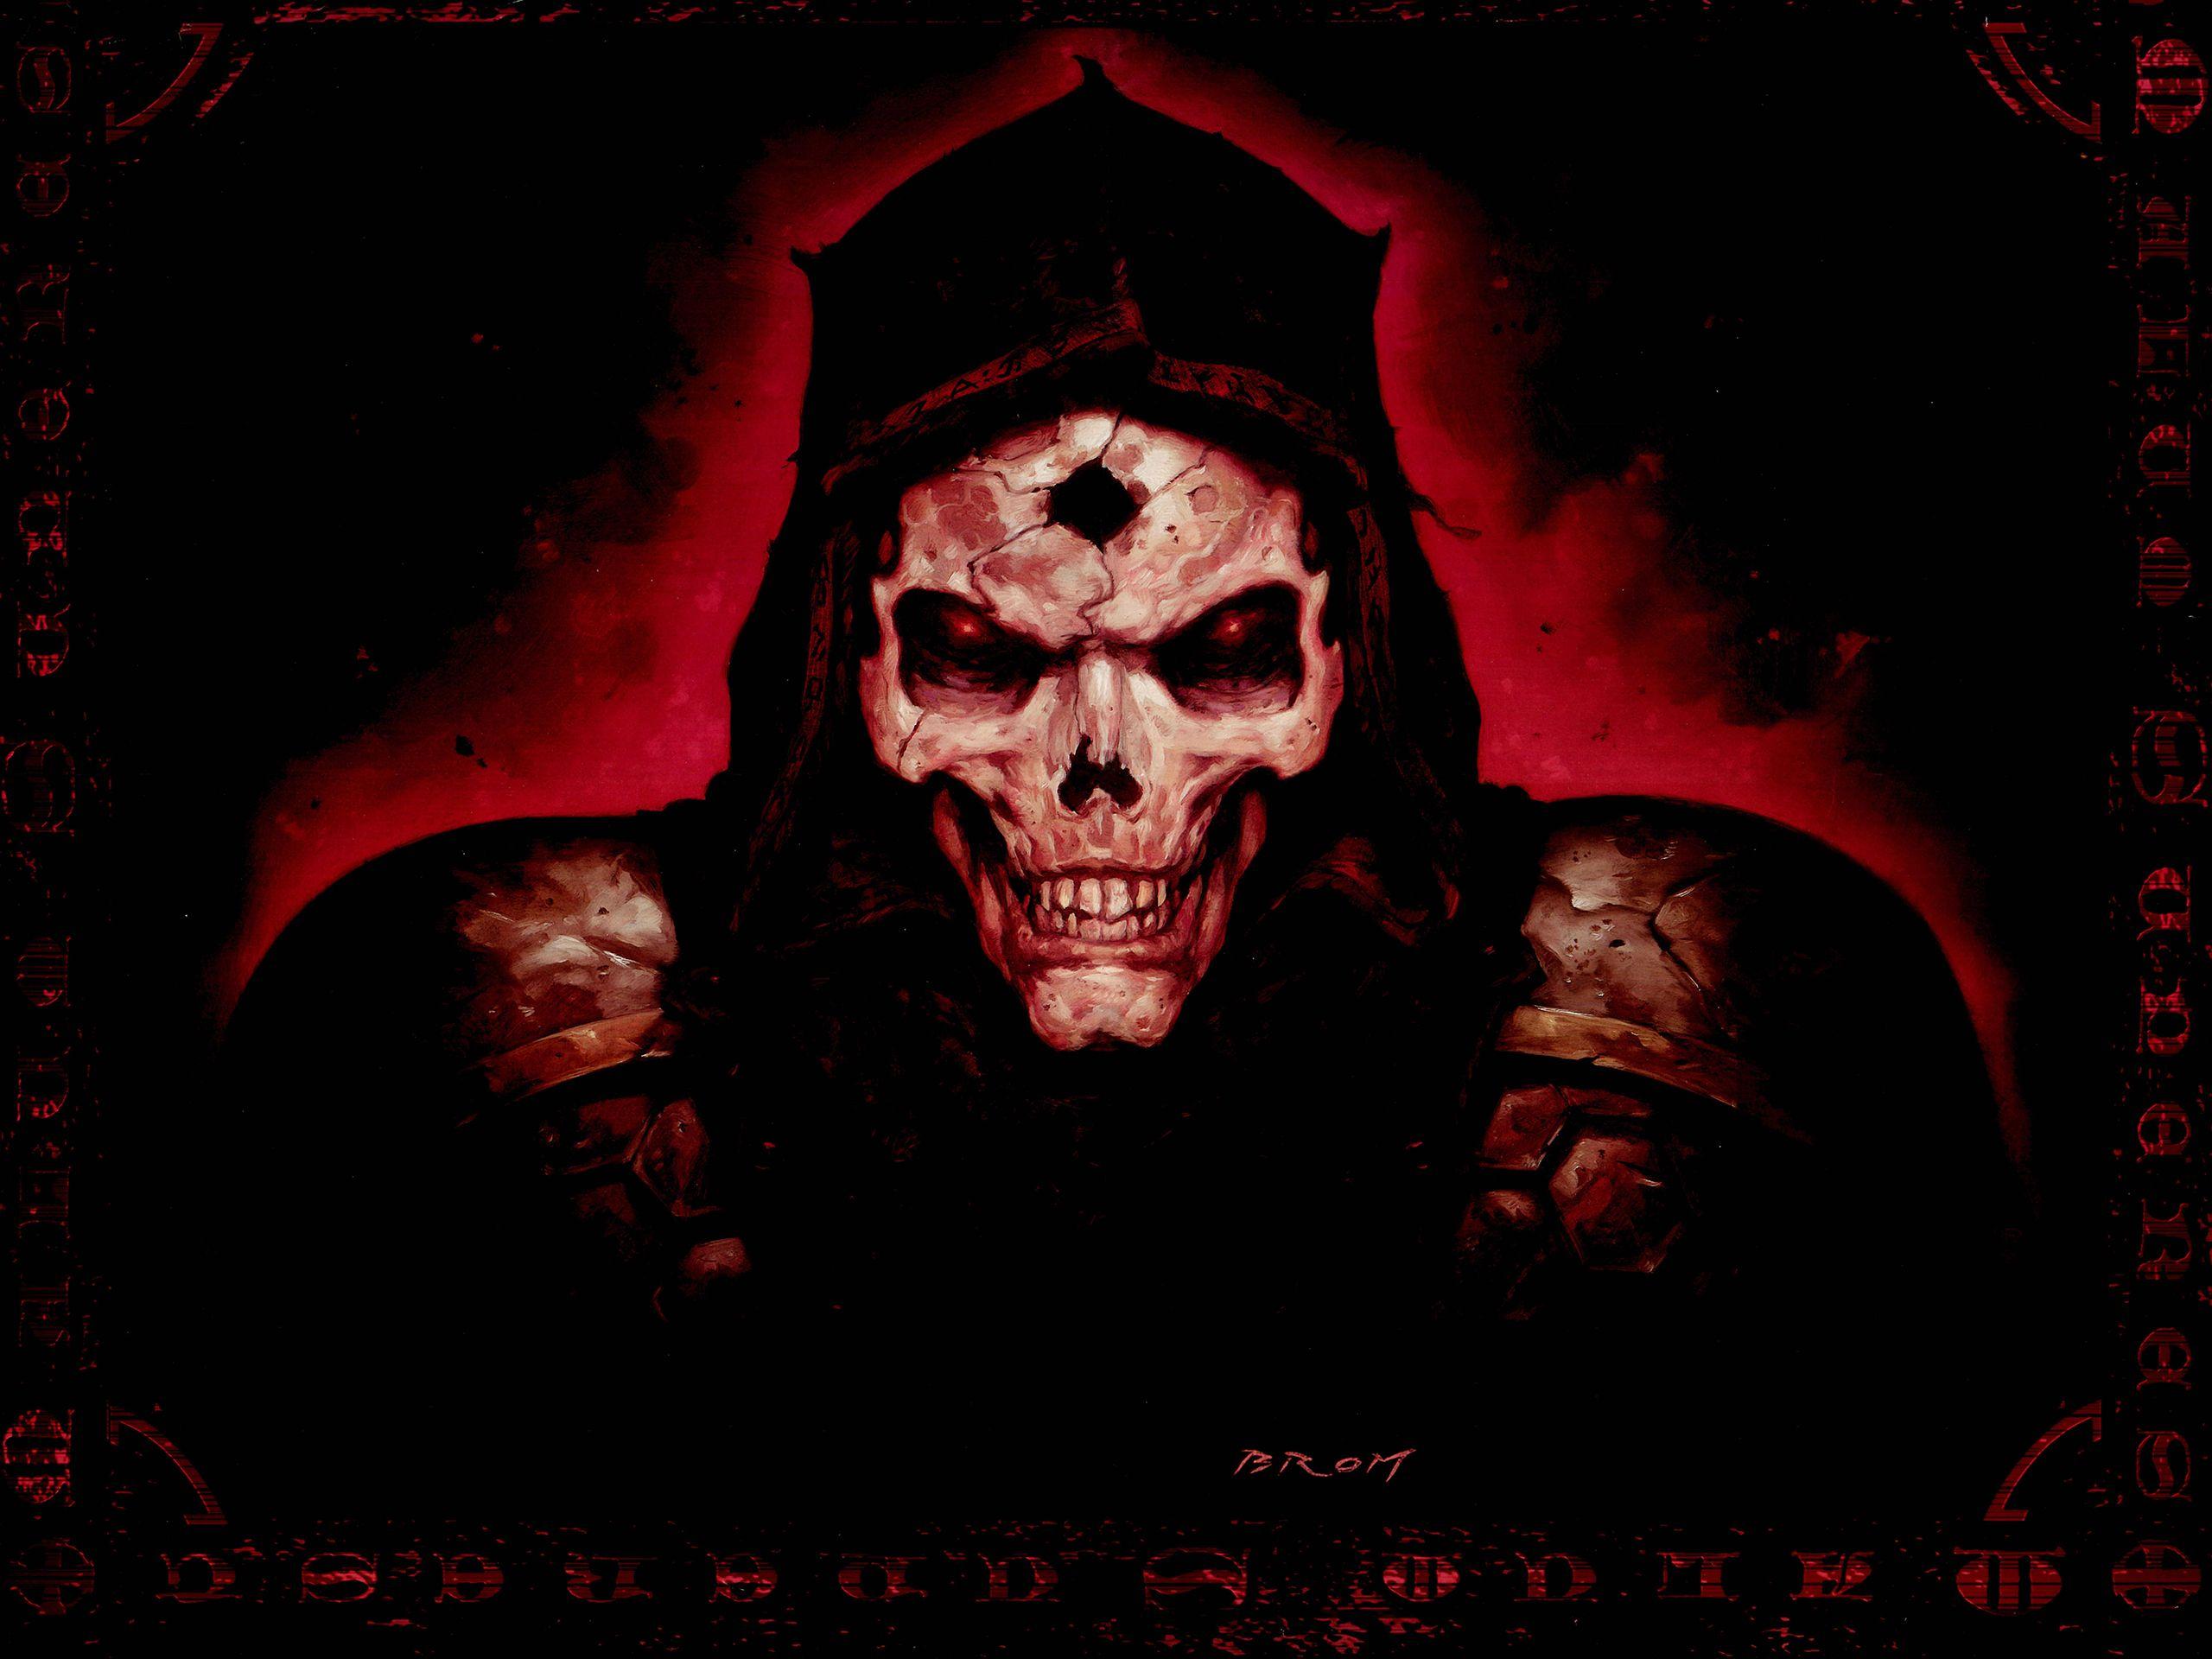 Diablo 2 Quake fantasy art dark horror skull evil scary spooky